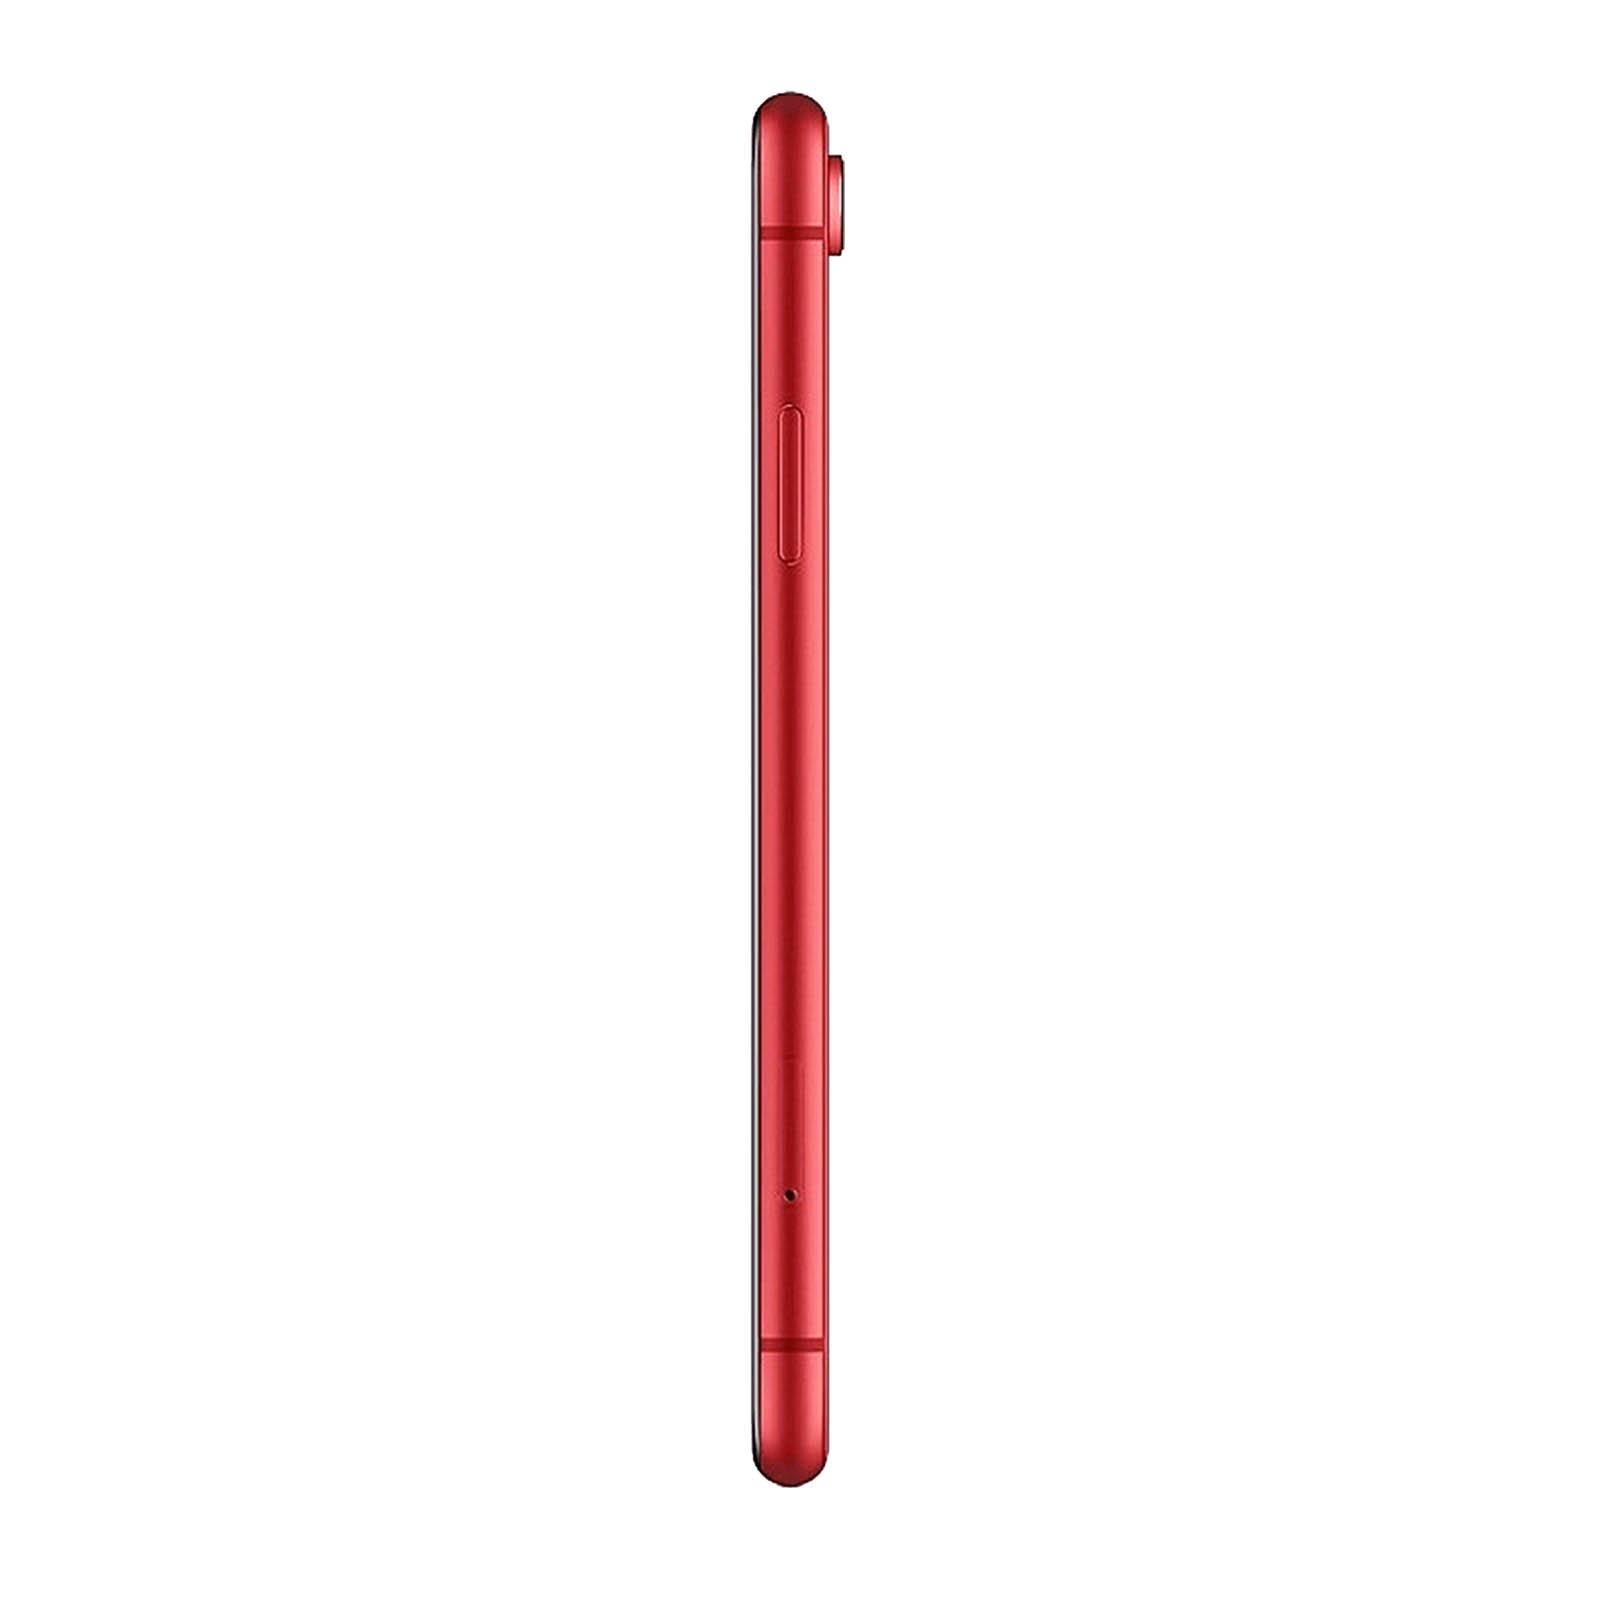 iPhone XR 128GB Red Unlocked – Loop Mobile - UK